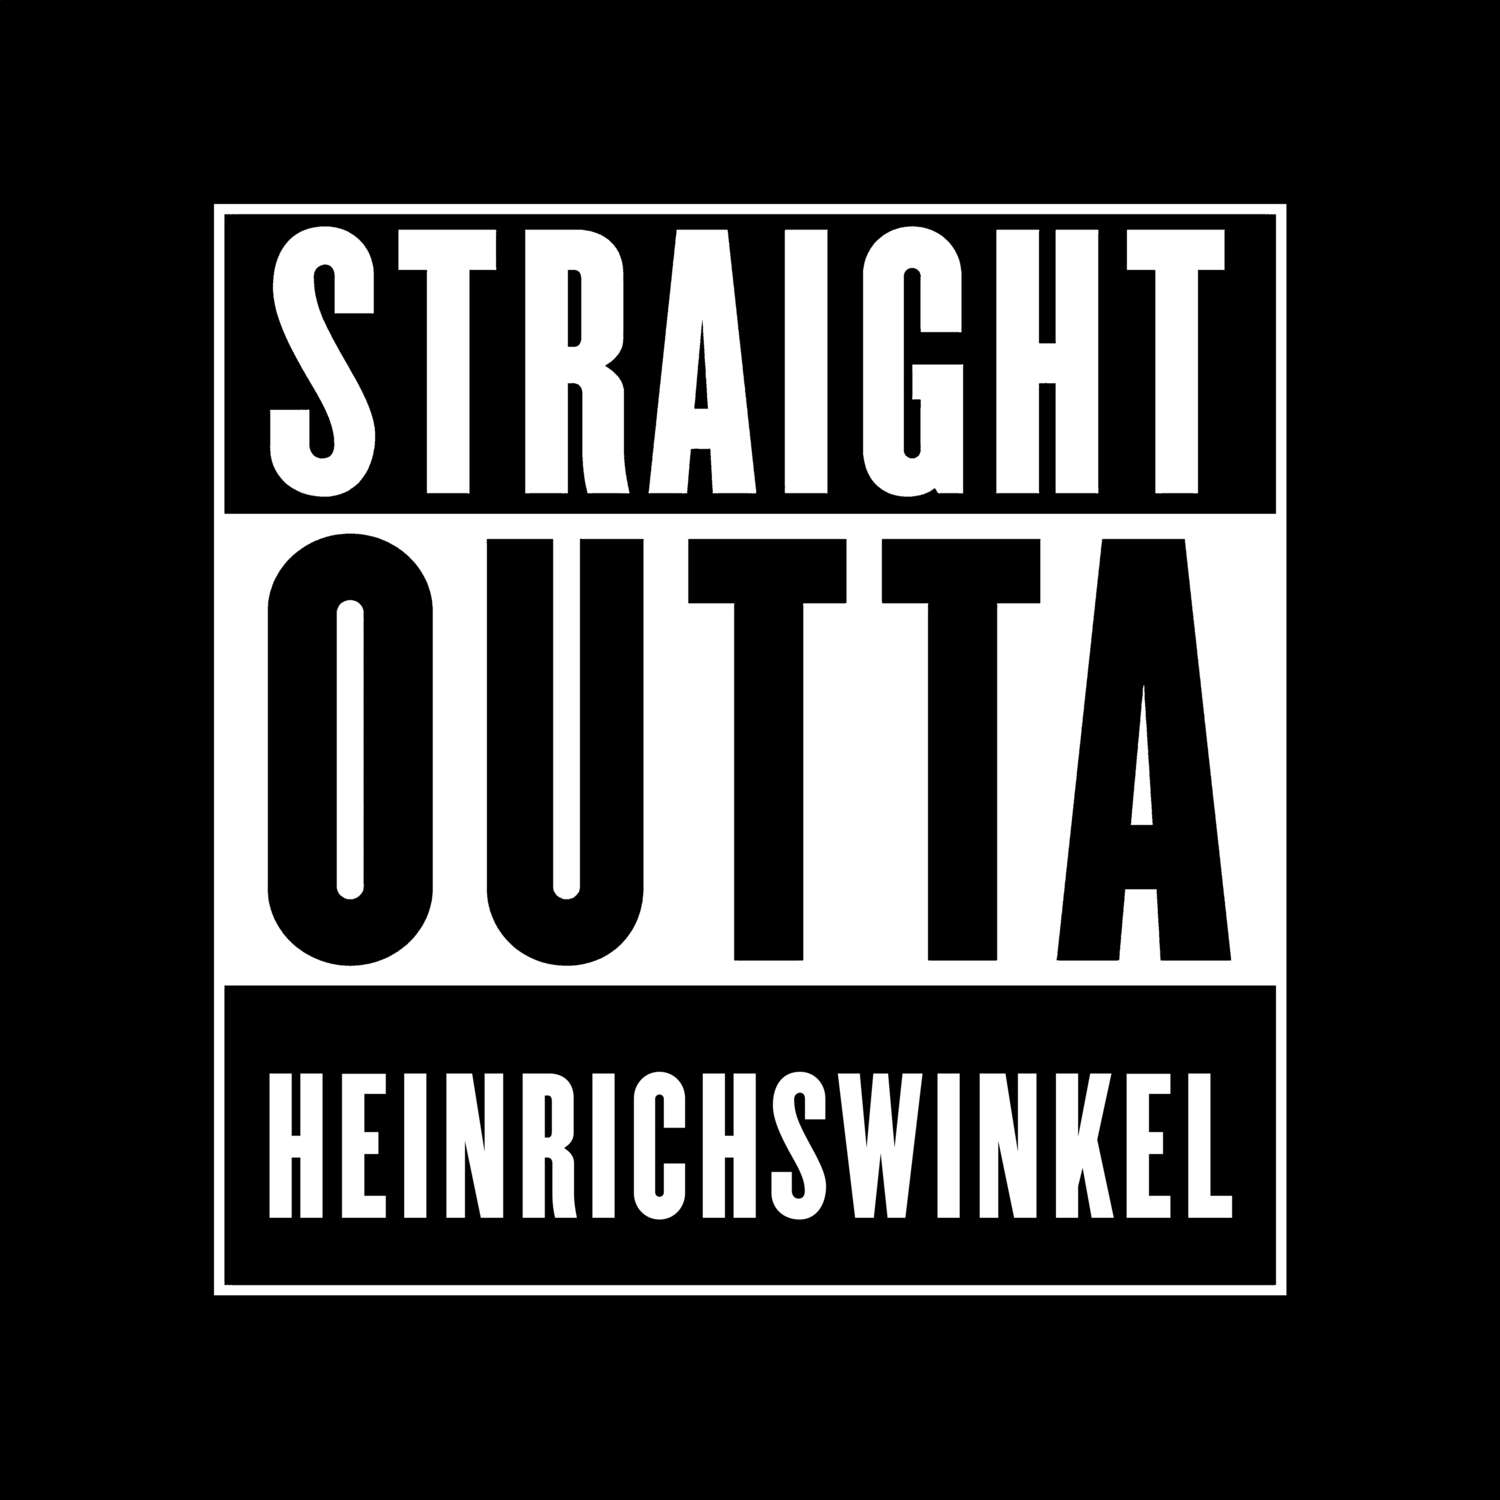 Heinrichswinkel T-Shirt »Straight Outta«